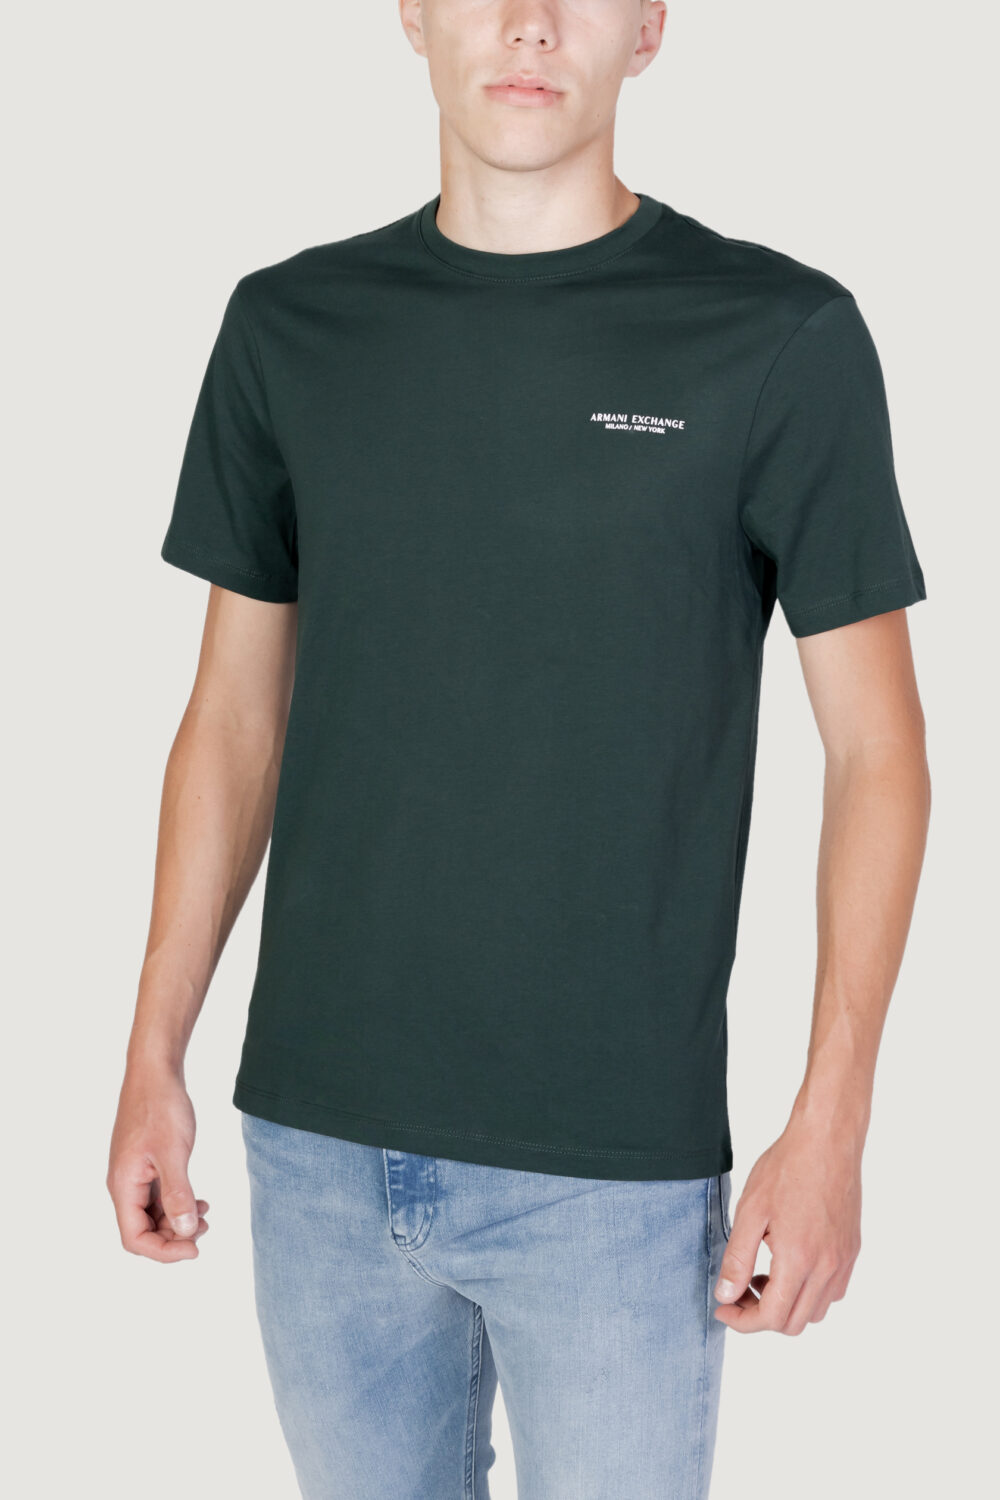 T-shirt Armani Exchange logo lato cuore Verde Scuro - Foto 1